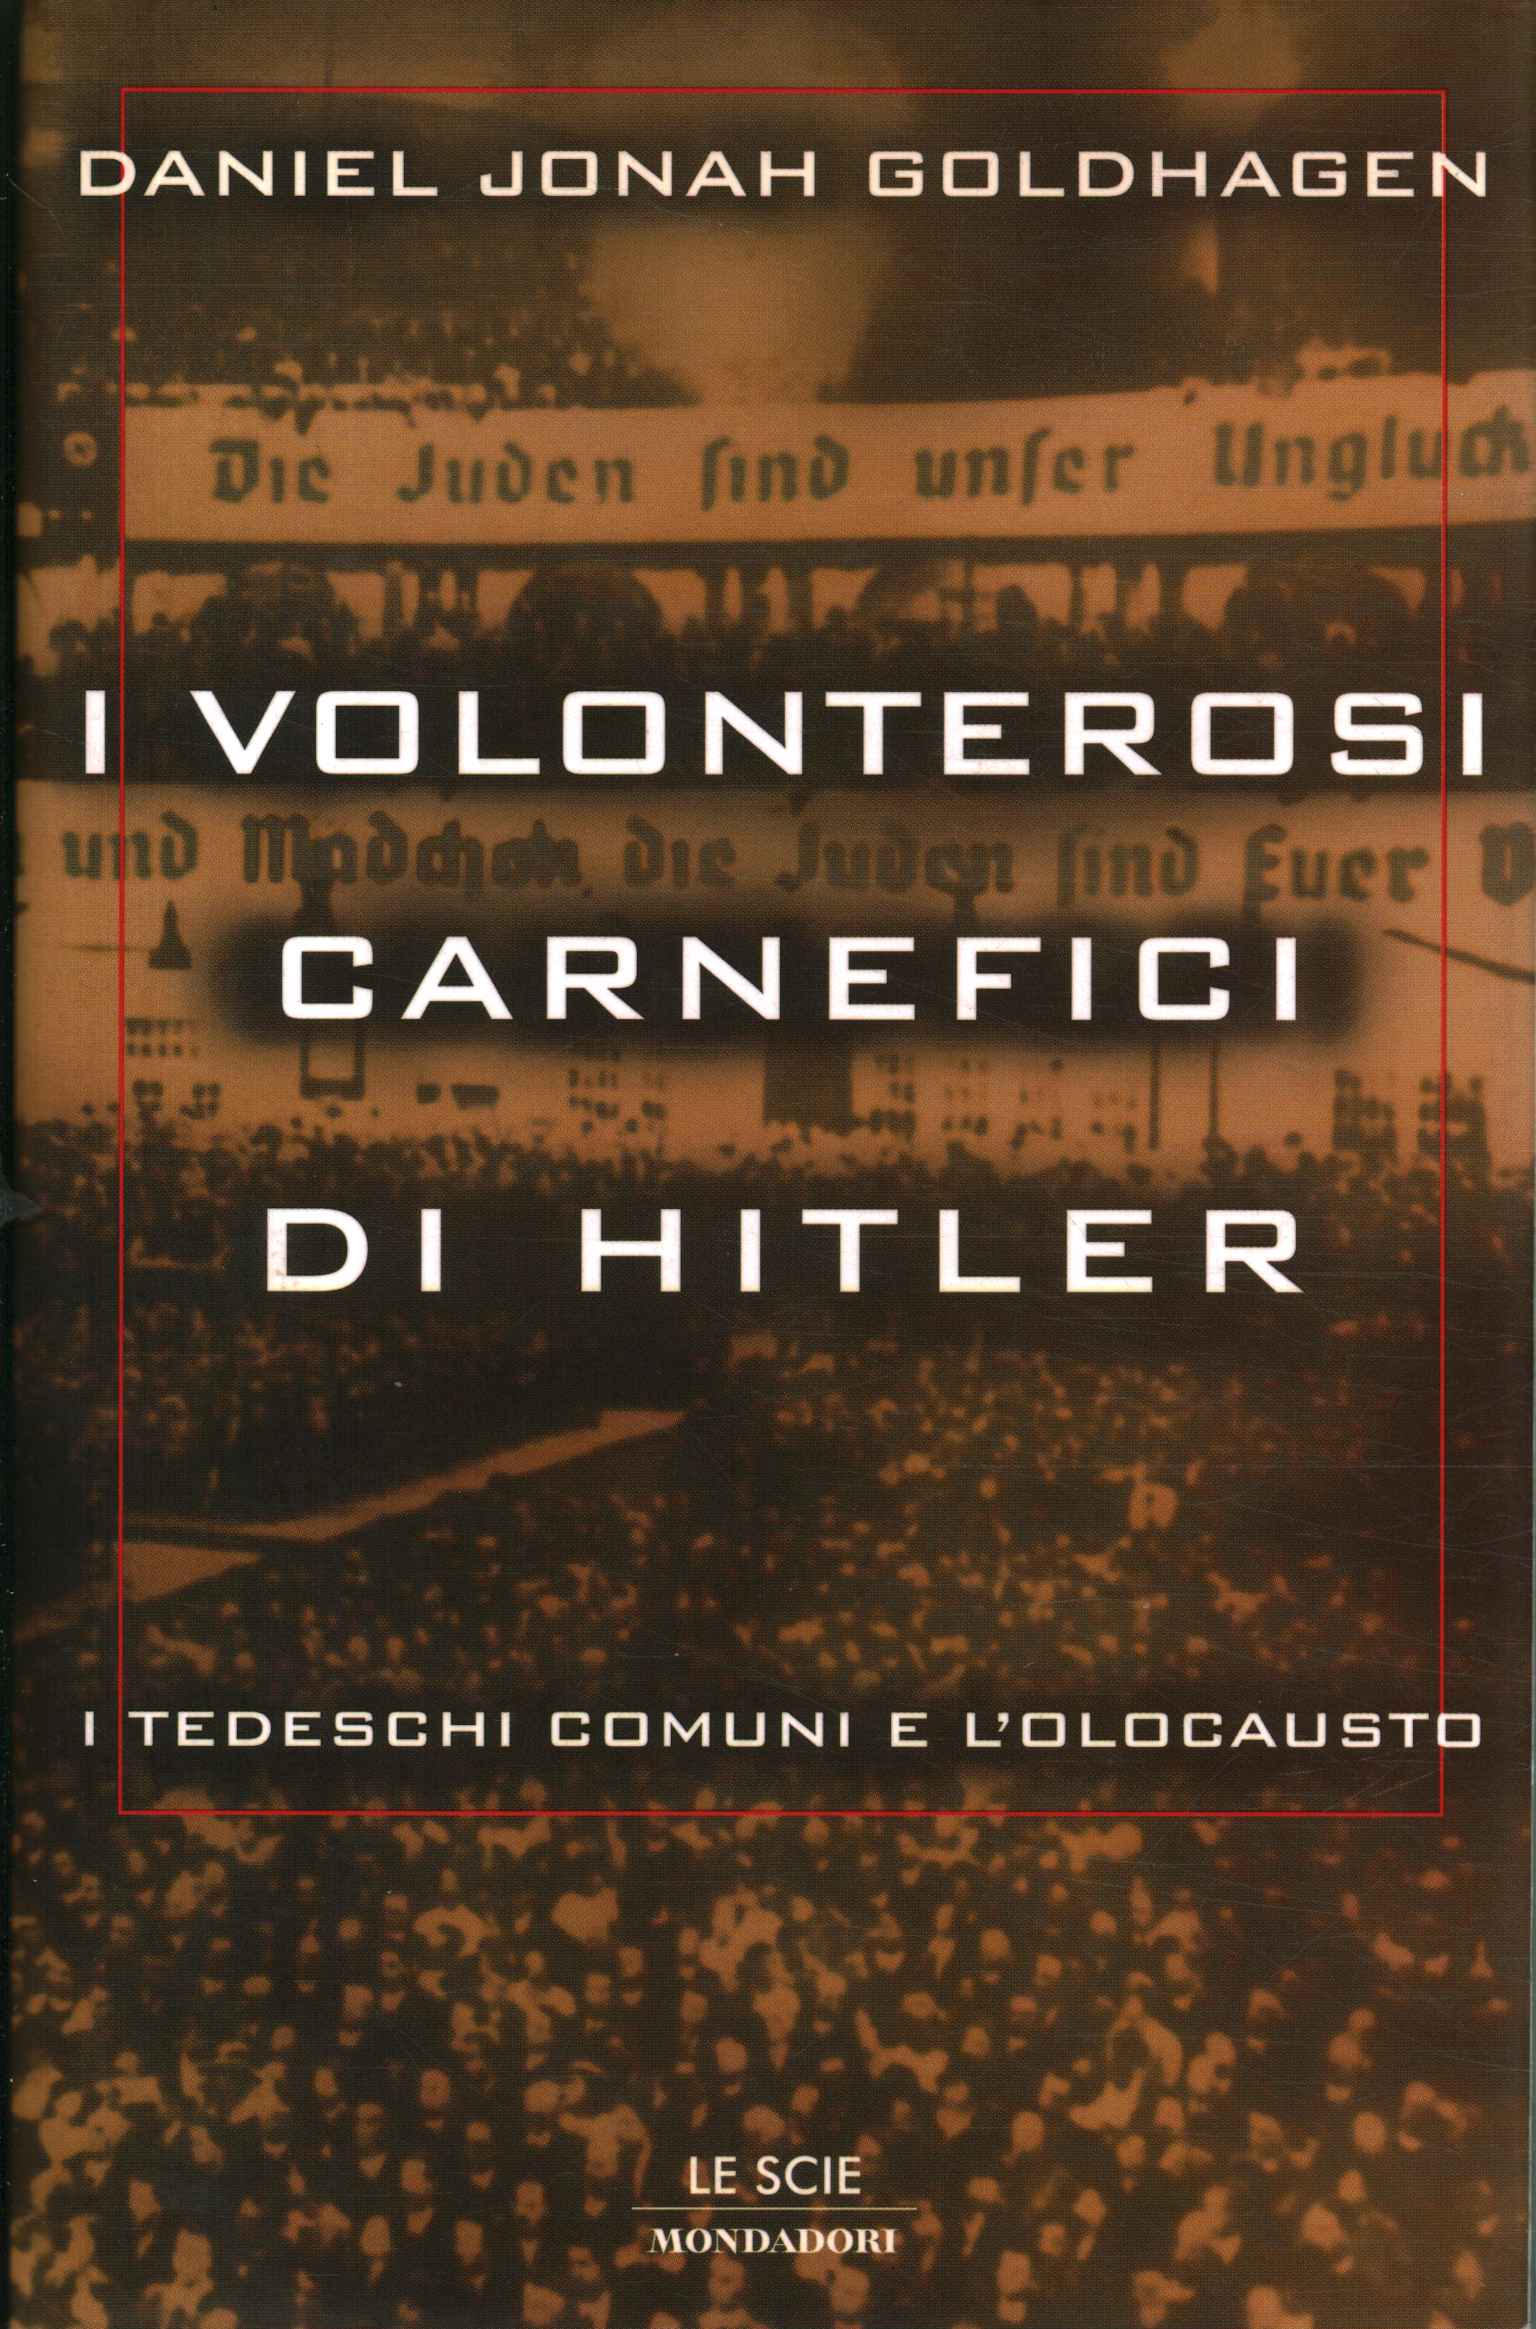 Les bourreaux volontaires d'Hitler